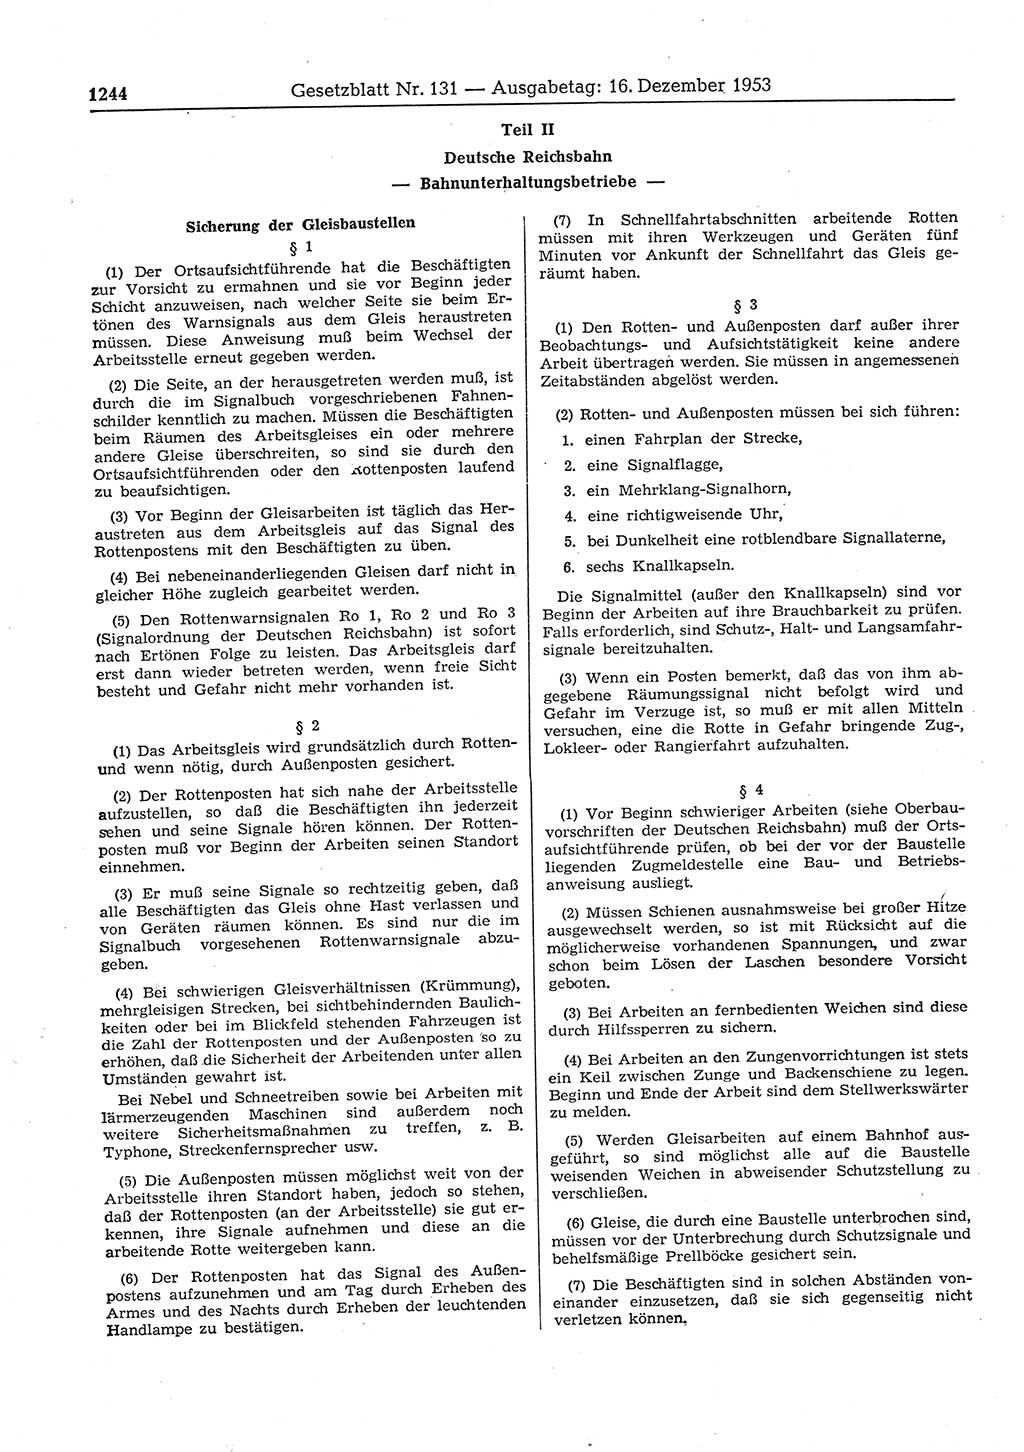 Gesetzblatt (GBl.) der Deutschen Demokratischen Republik (DDR) 1953, Seite 1244 (GBl. DDR 1953, S. 1244)